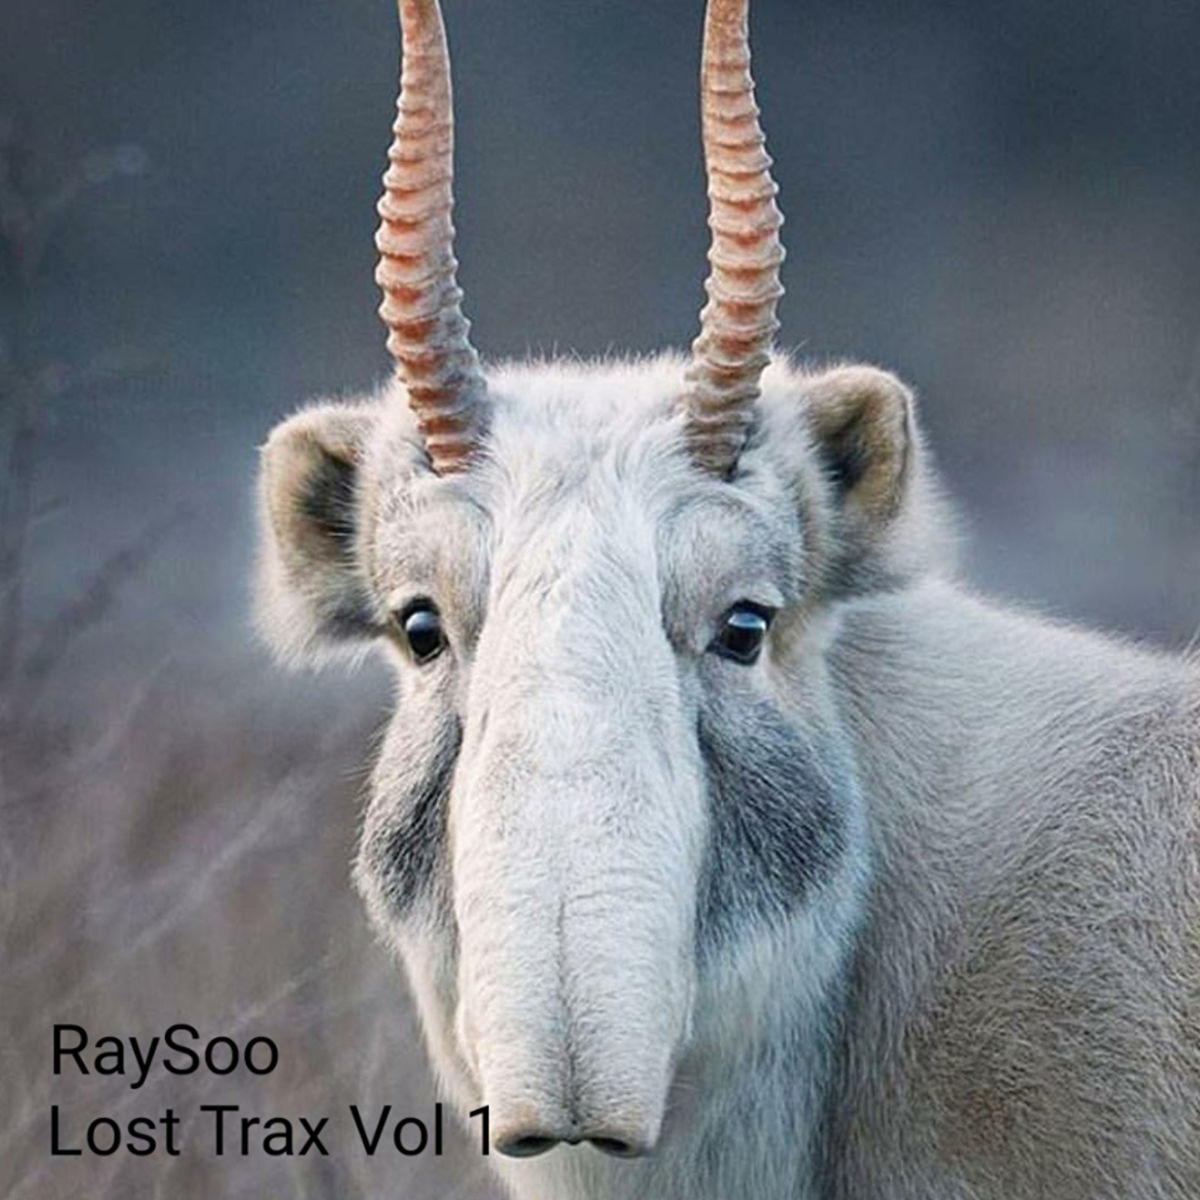 RaySoo - Lost Trax Vol 1 / Love International